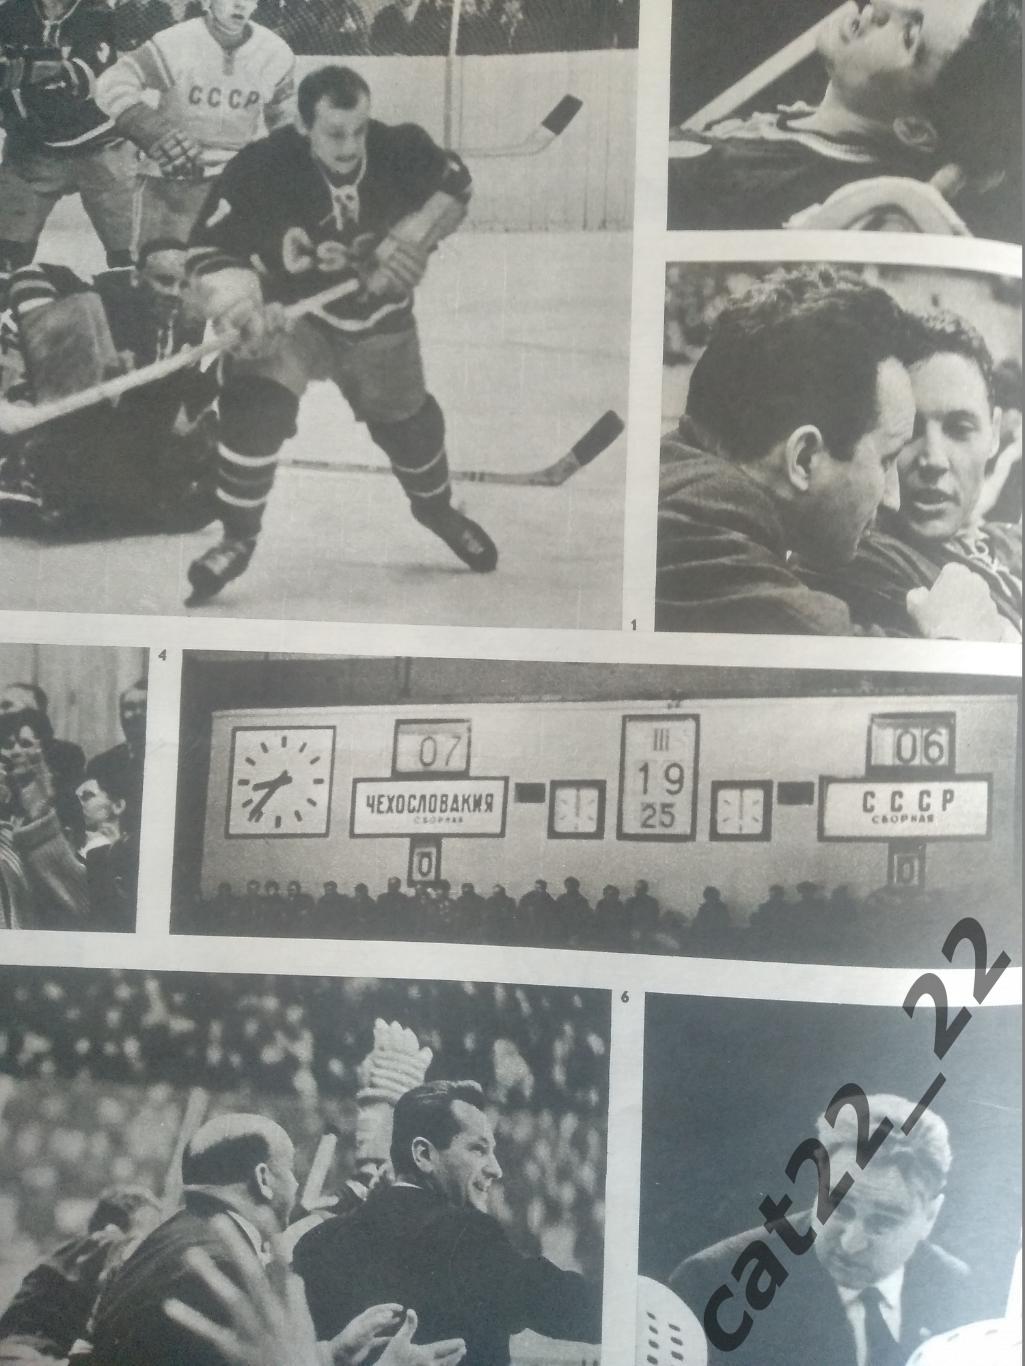 Журнал Стадион/Stadion. Полный номер. Хоккей. СССР 49 1966 1